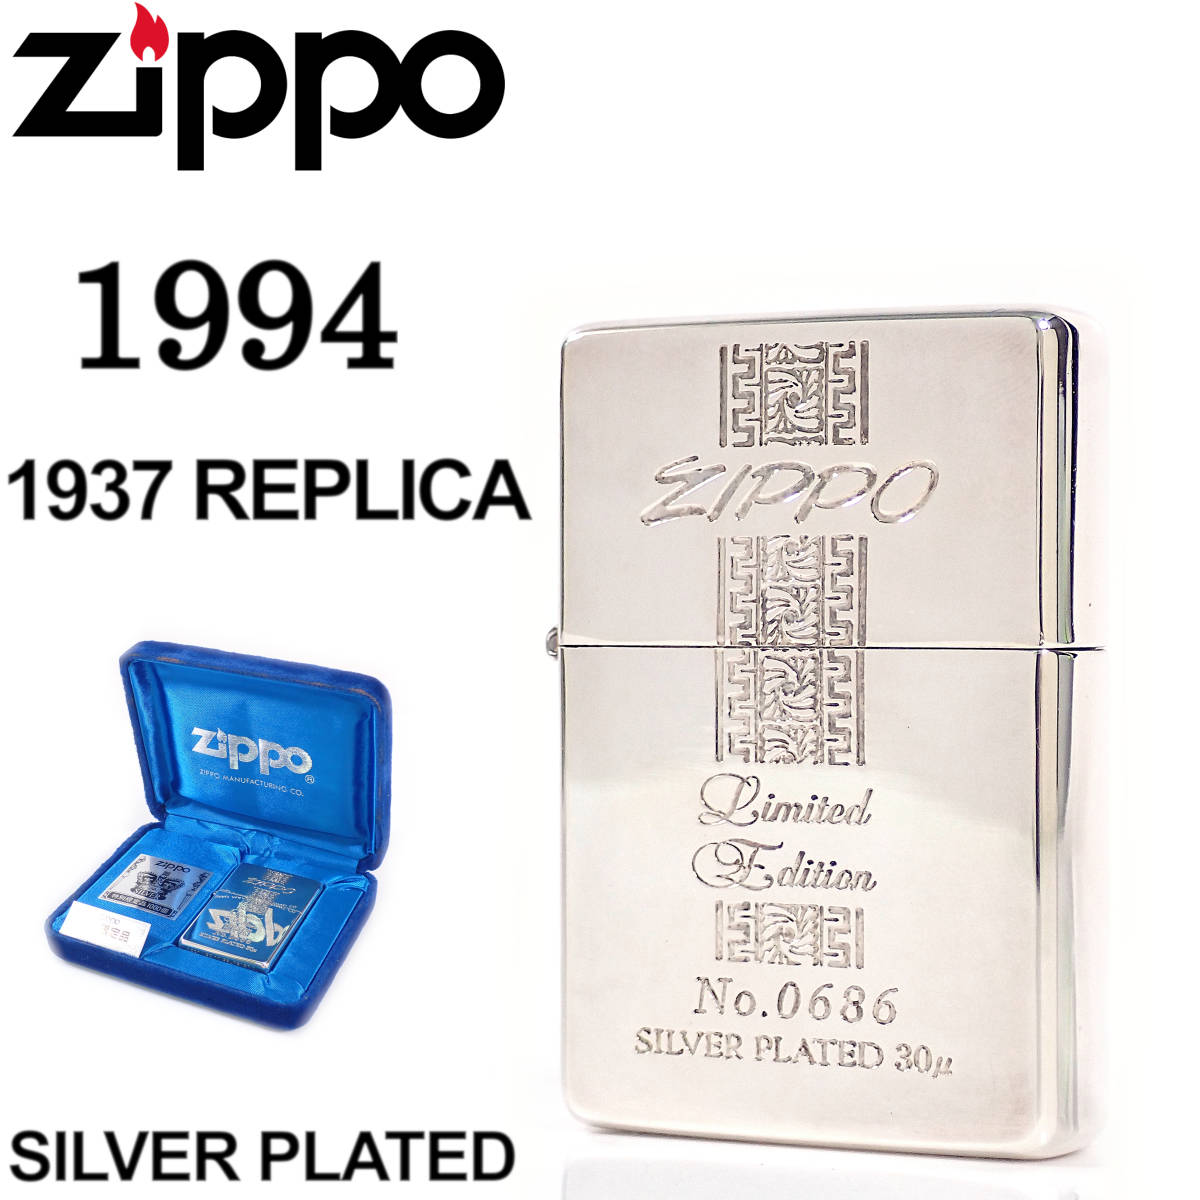 未使用 Zippo 1937 REPLICA SILVER PLATED LIMITED EDITION 1994年 ジッポ 1937レプリカ シルバープレート リミテッドエディション